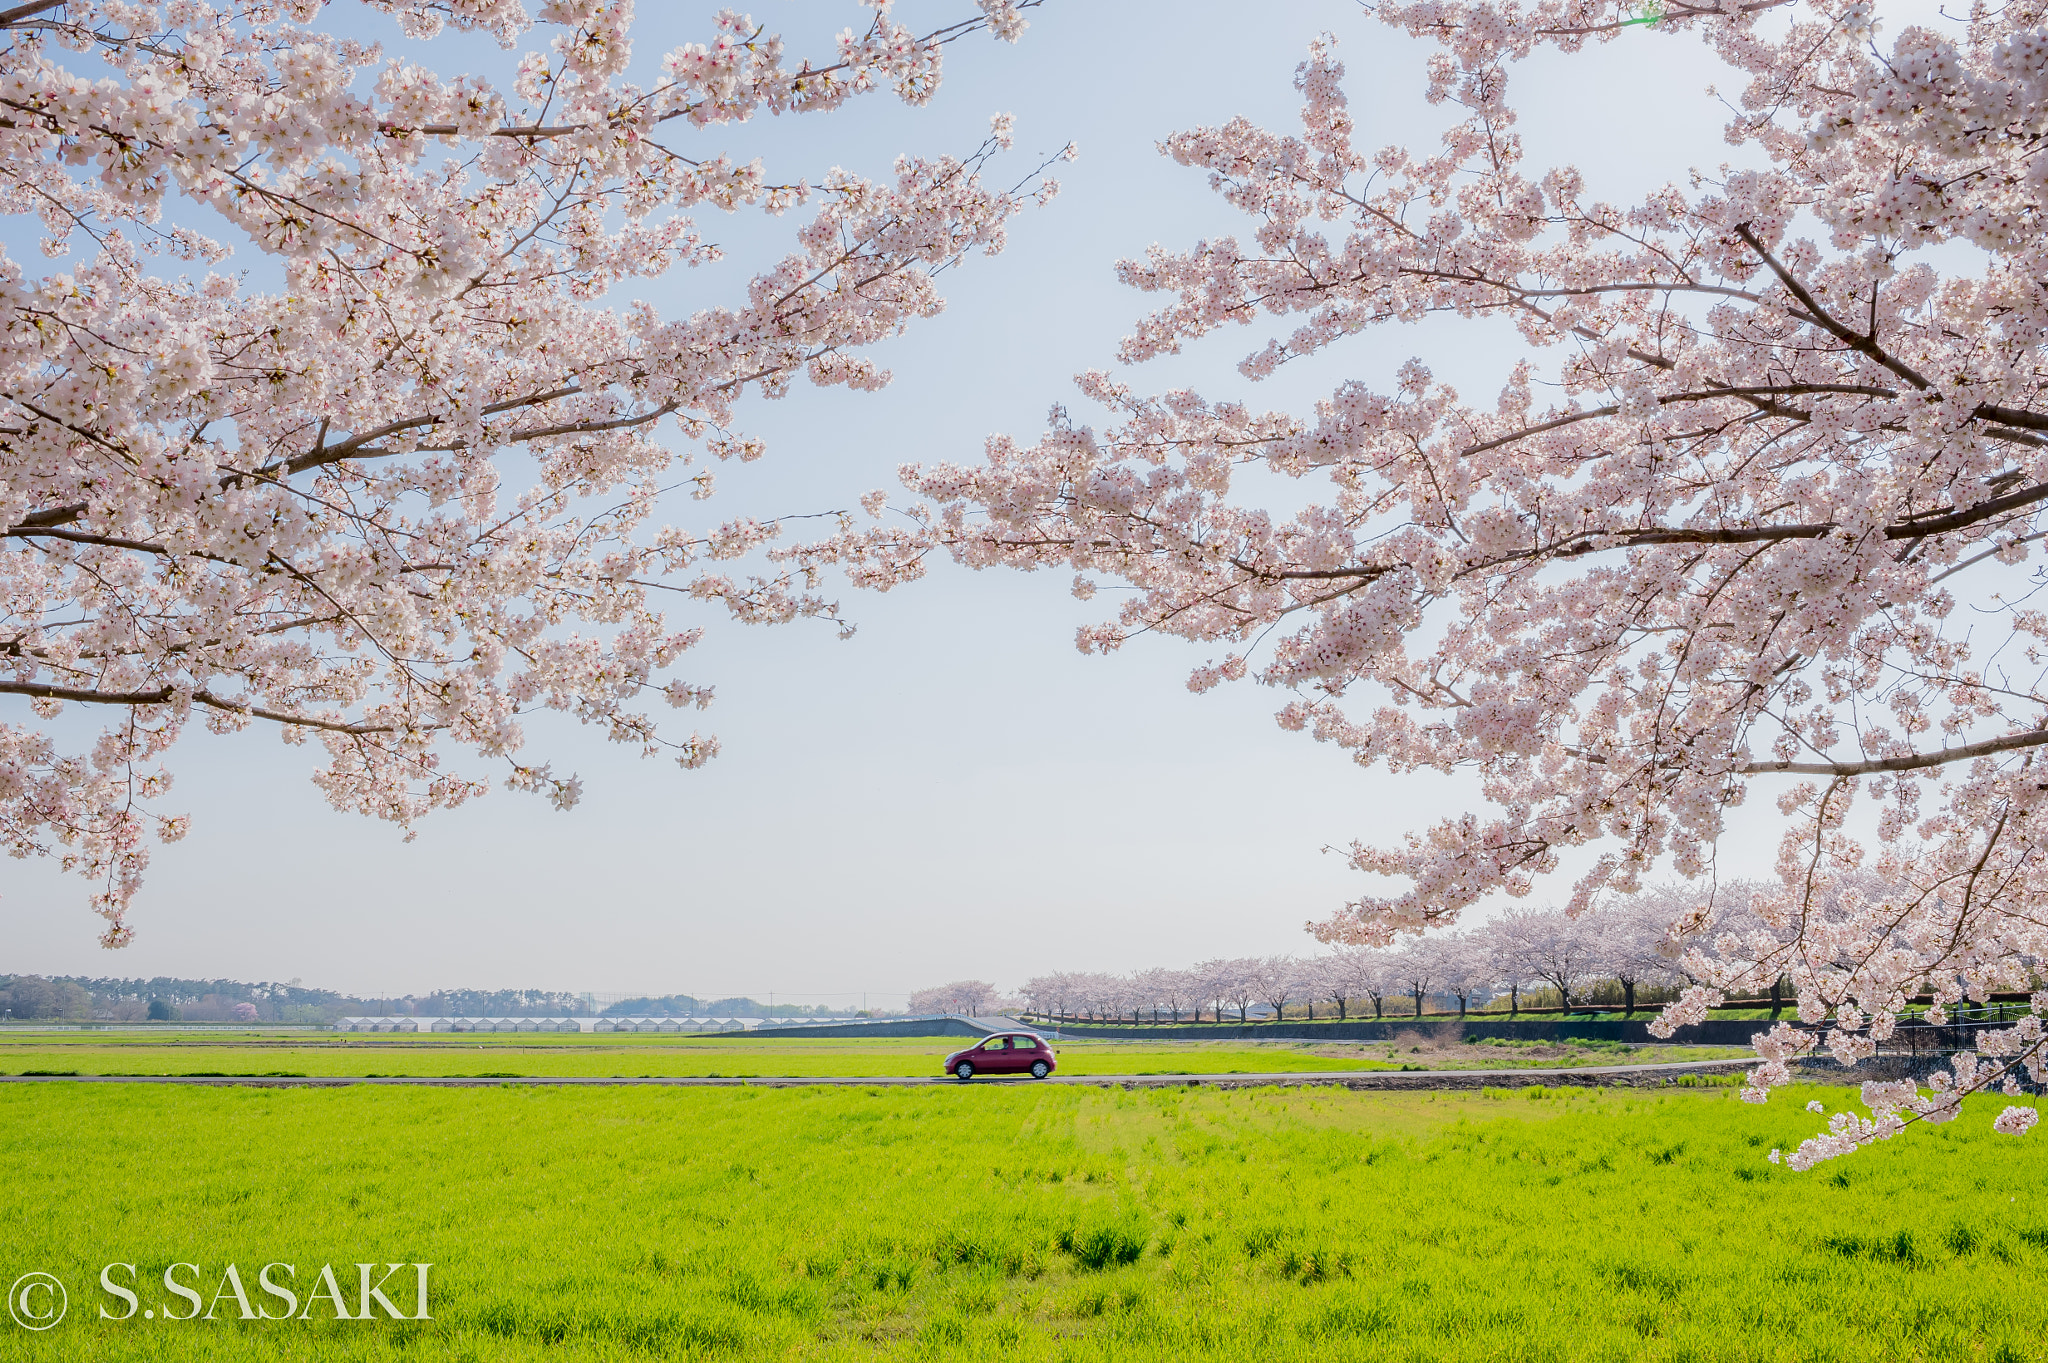 Nikon Df + AF-S Nikkor 35mm f/1.8G sample photo. Spring of japan photography